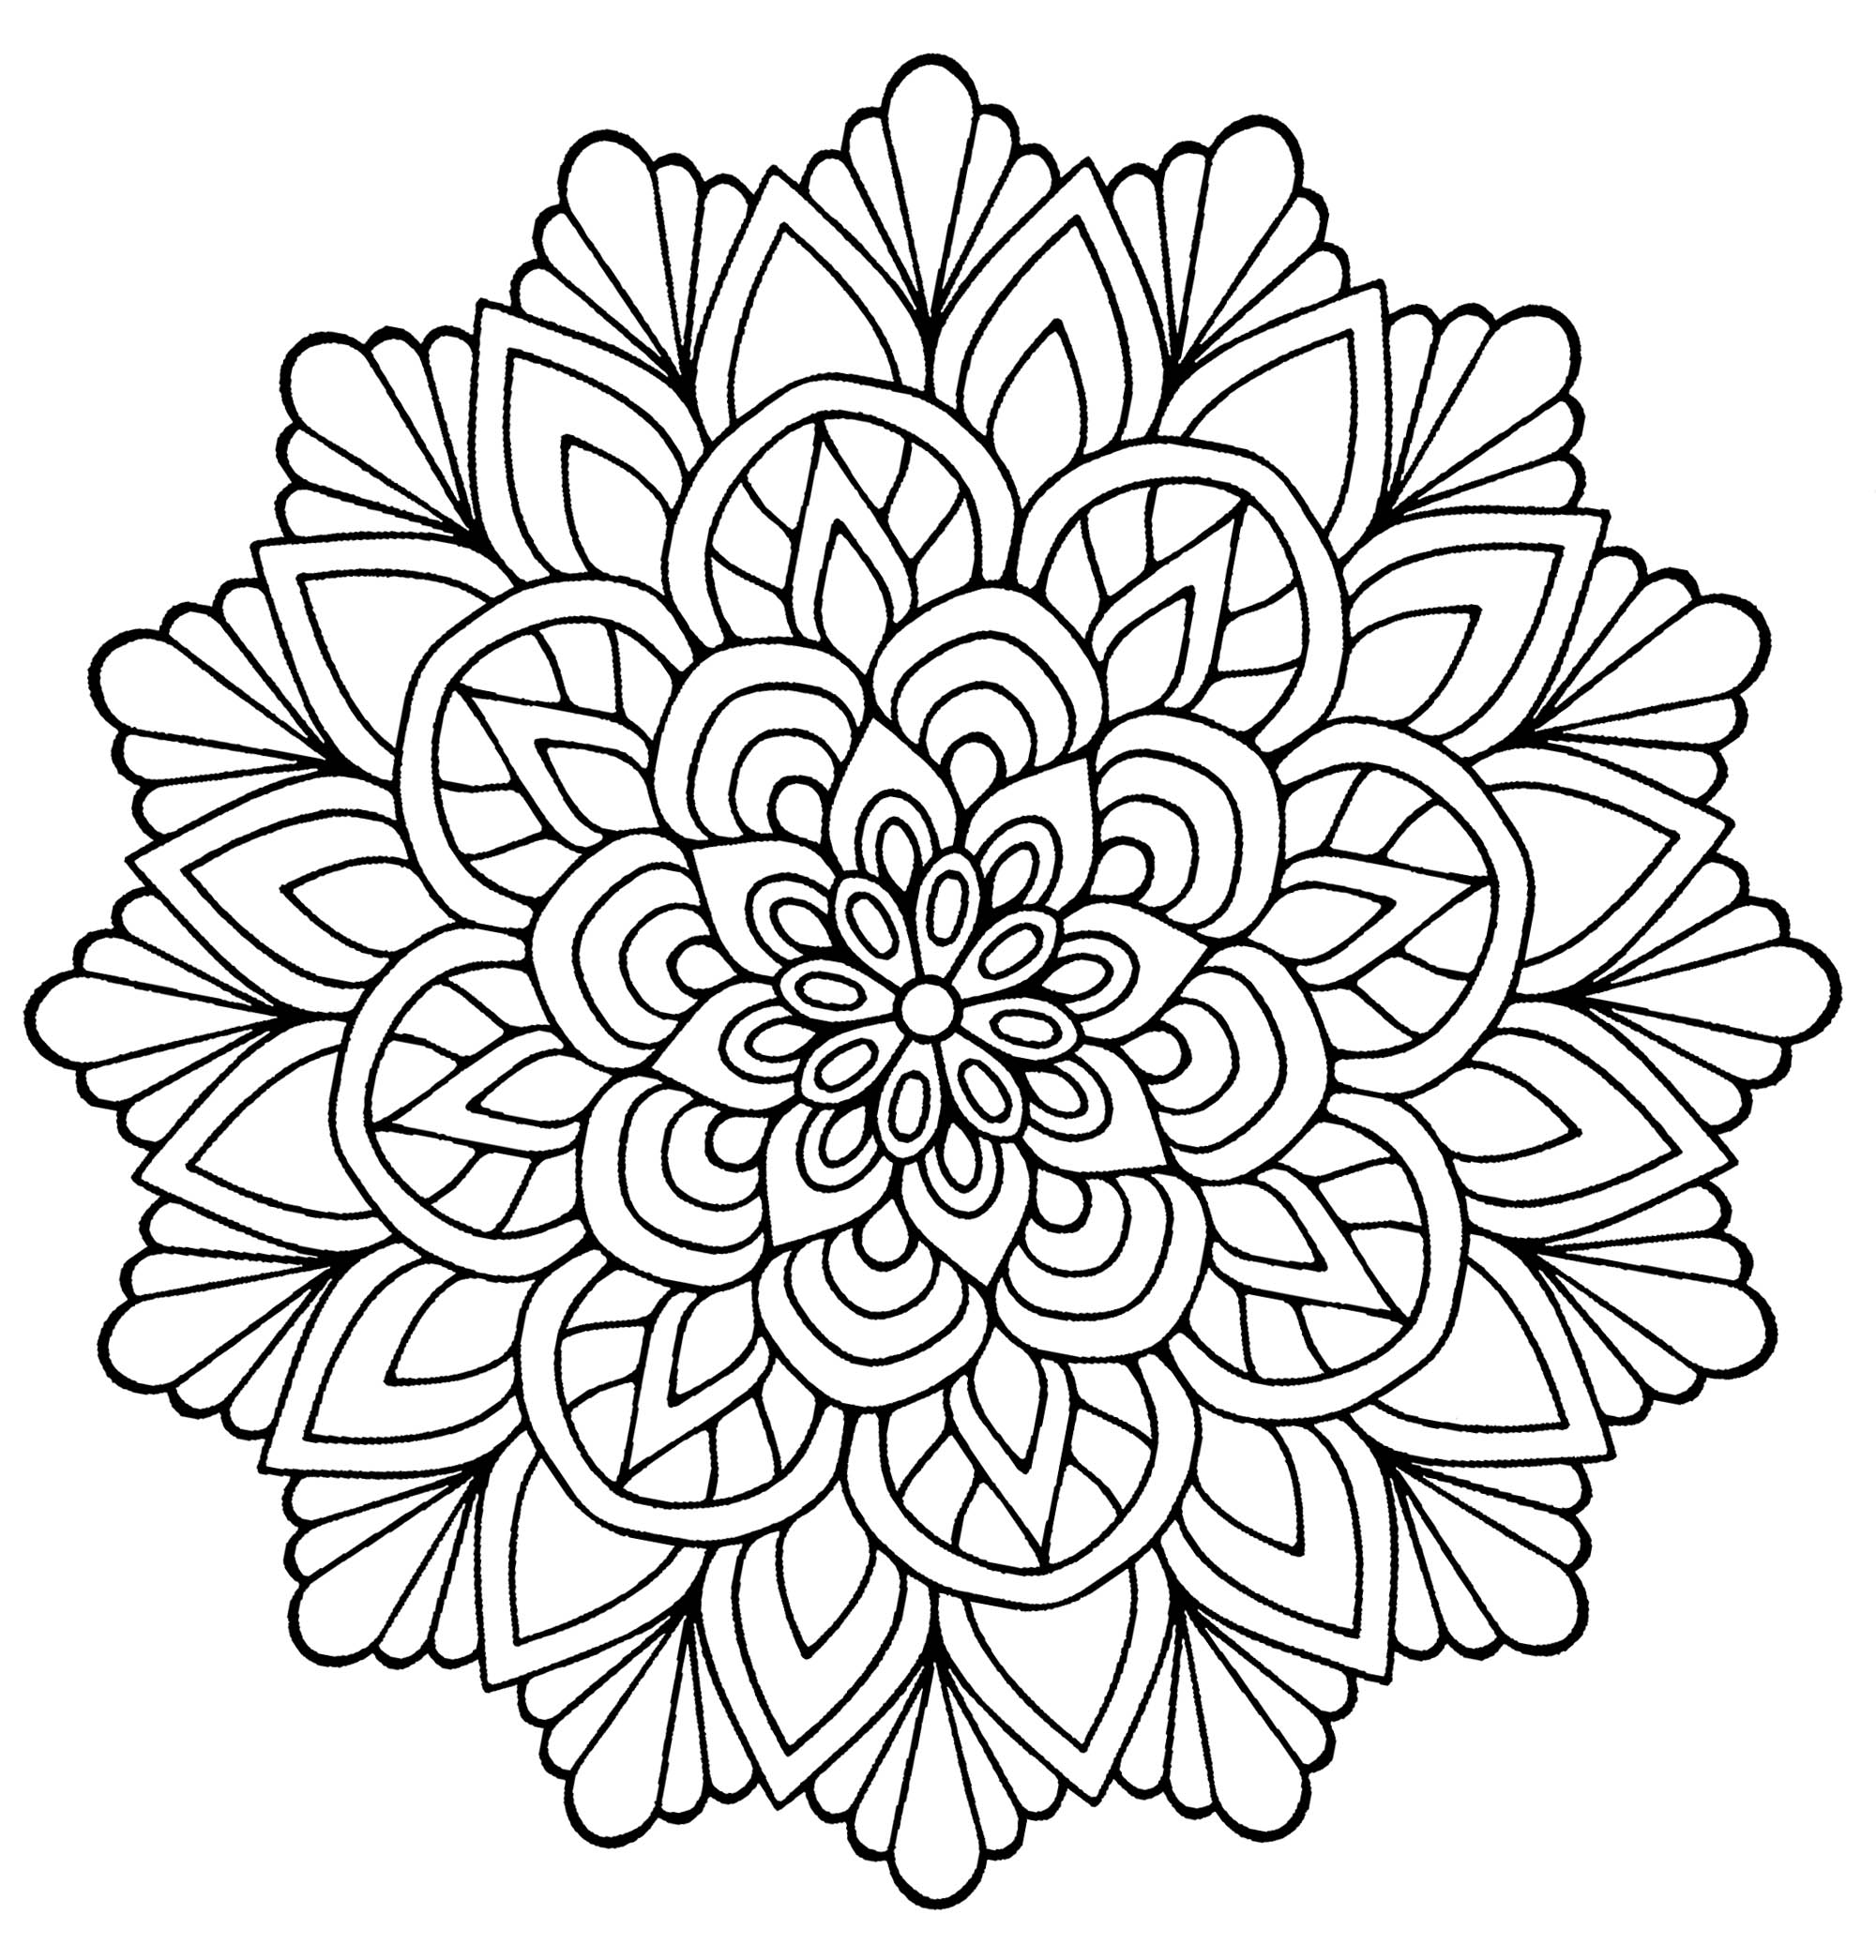 Dieses Mandala mit Blumen und Blättern ist perfekt, um eine schöne Zeit beim Ausmalen zu verbringen. Eine schöne Blume in der Mitte und hübsche Blätter, die sie umgeben. Es ist wirklich ein perfektes Mandala, wenn Sie gerne Blumen ausmalen.